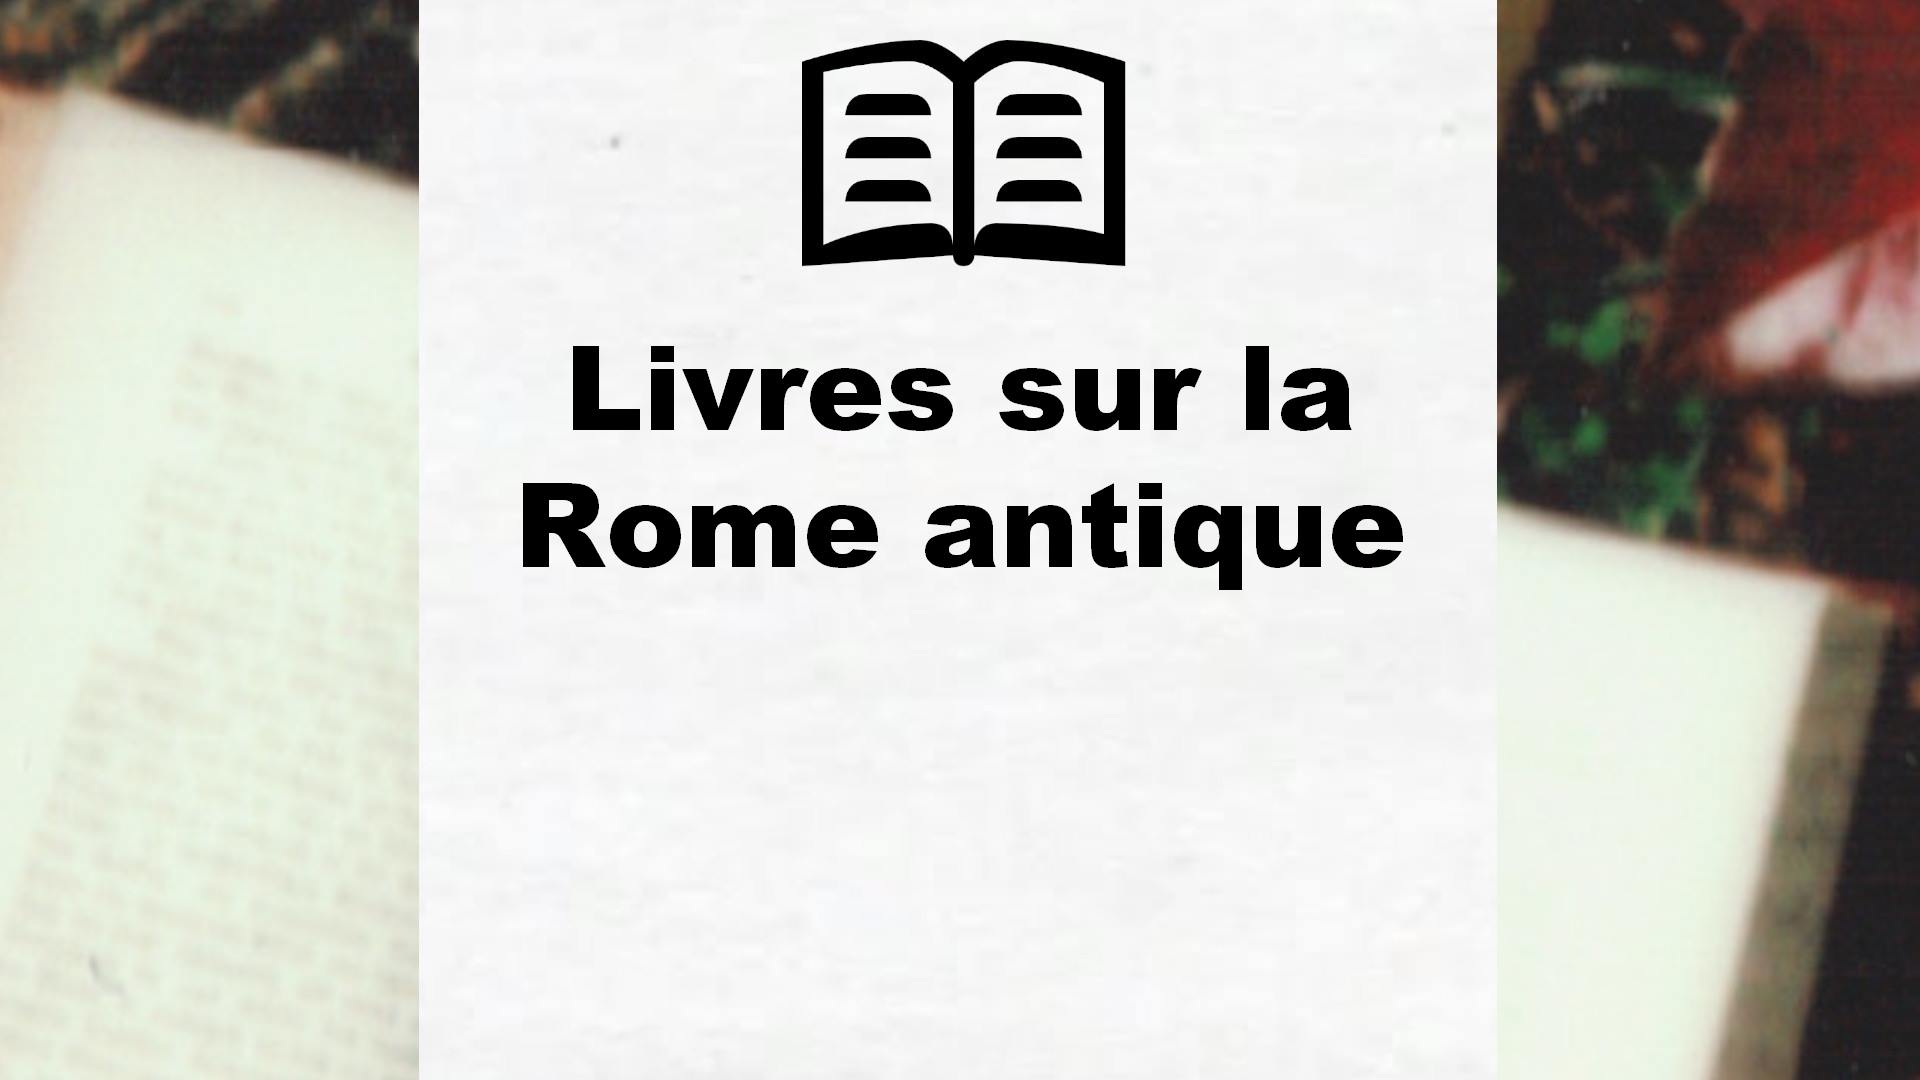 Livres sur la Rome antique